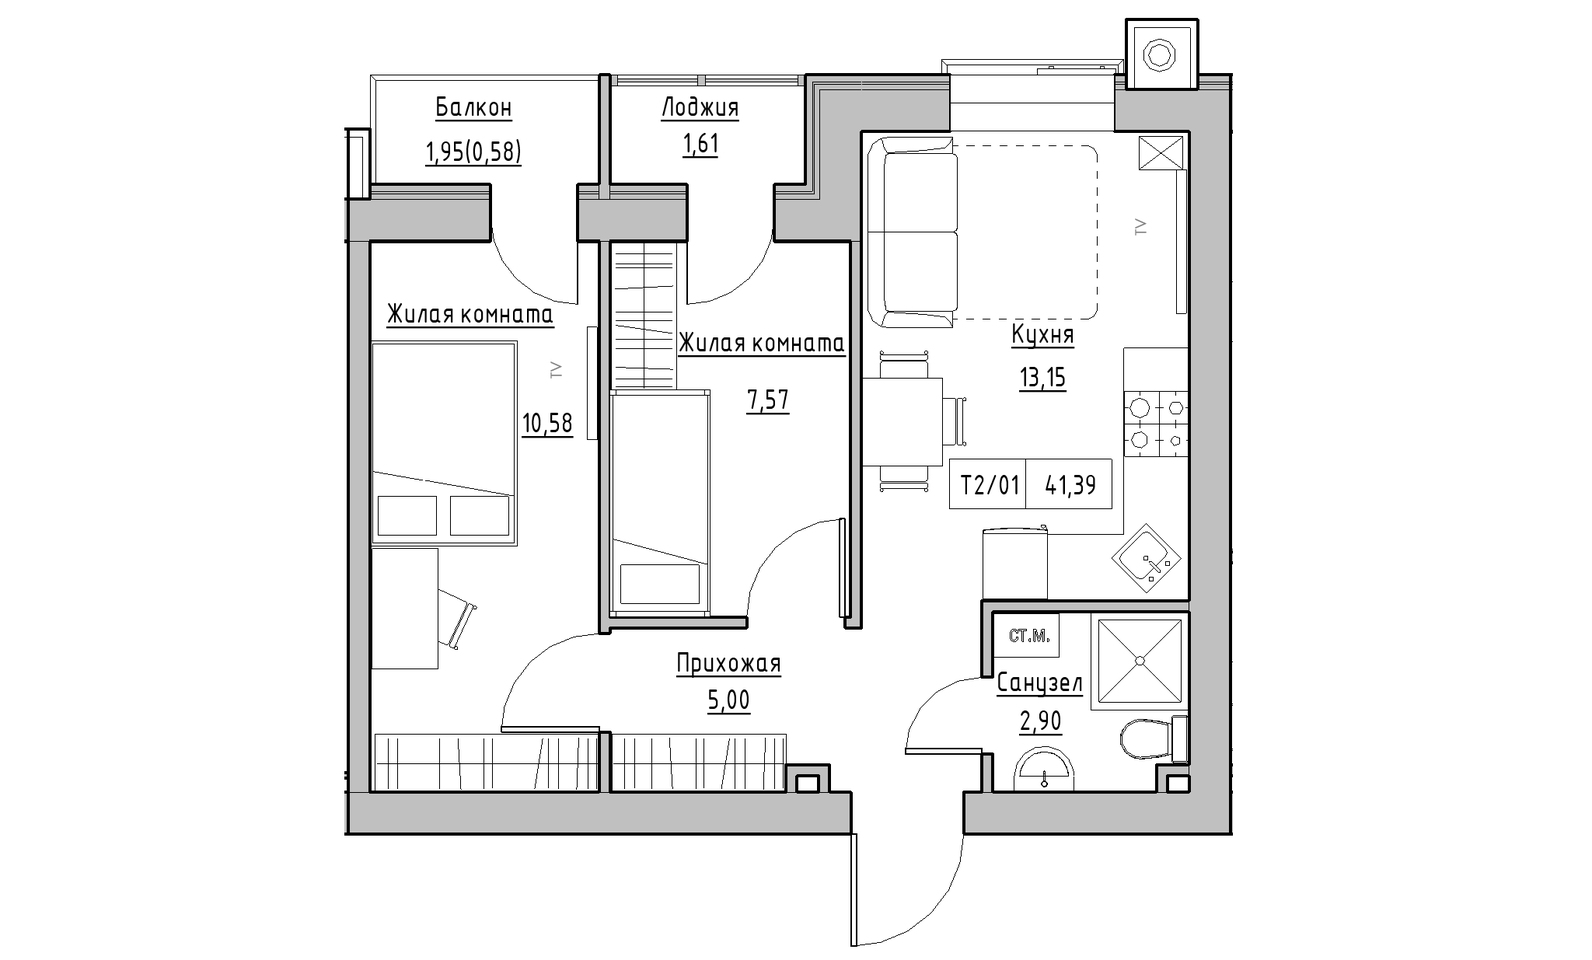 Планировка 2-к квартира площей 41.39м2, KS-014-03/0005.